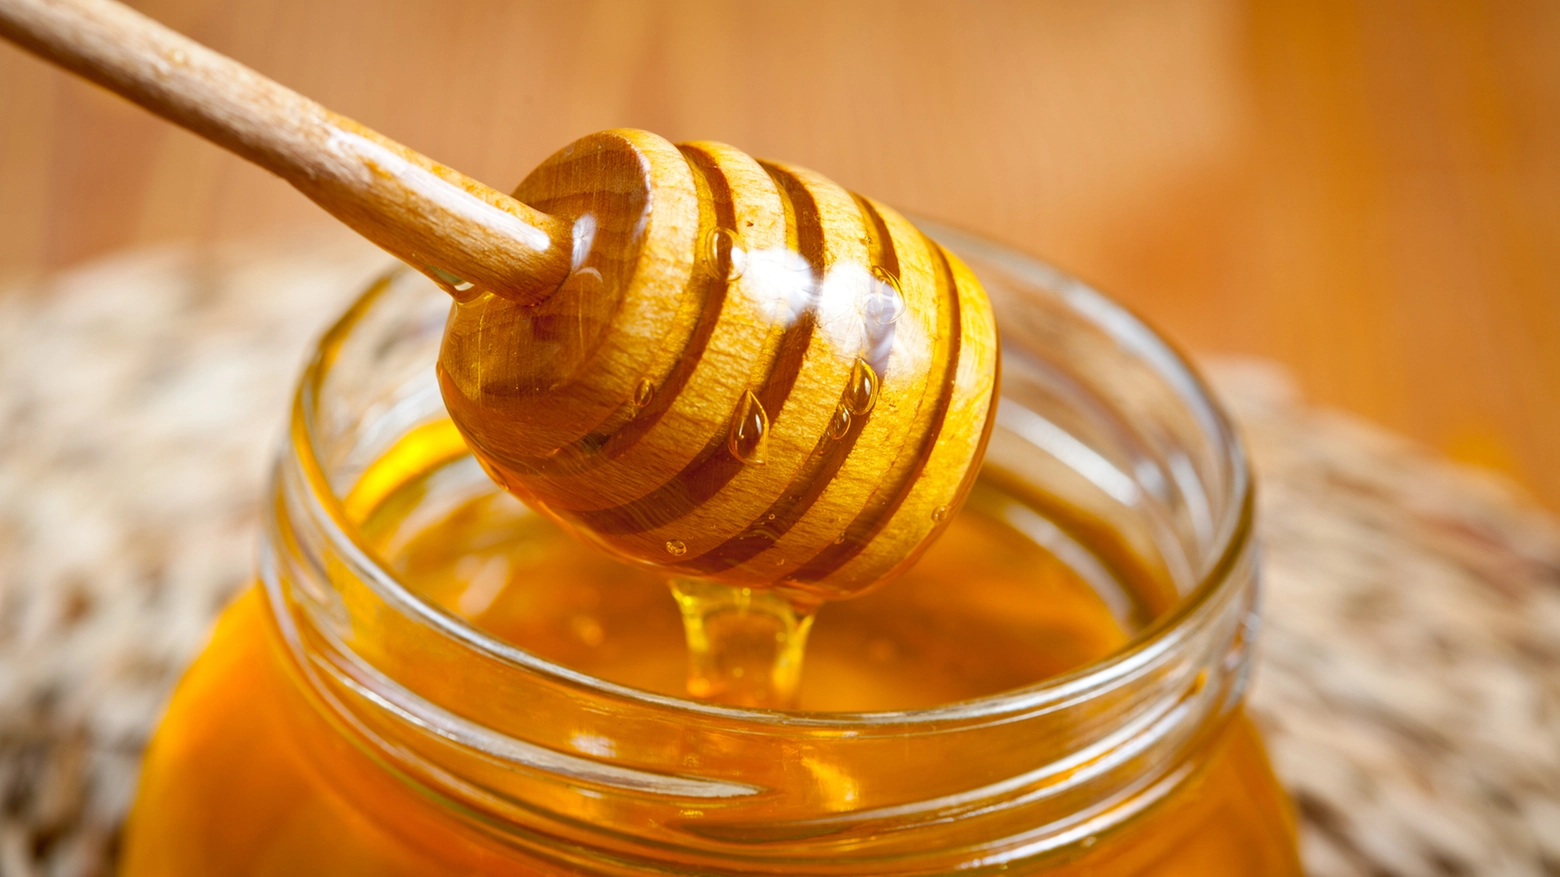 Le analisi hanno scoperto che il miele millefiori era etichettato come miele d'acacia